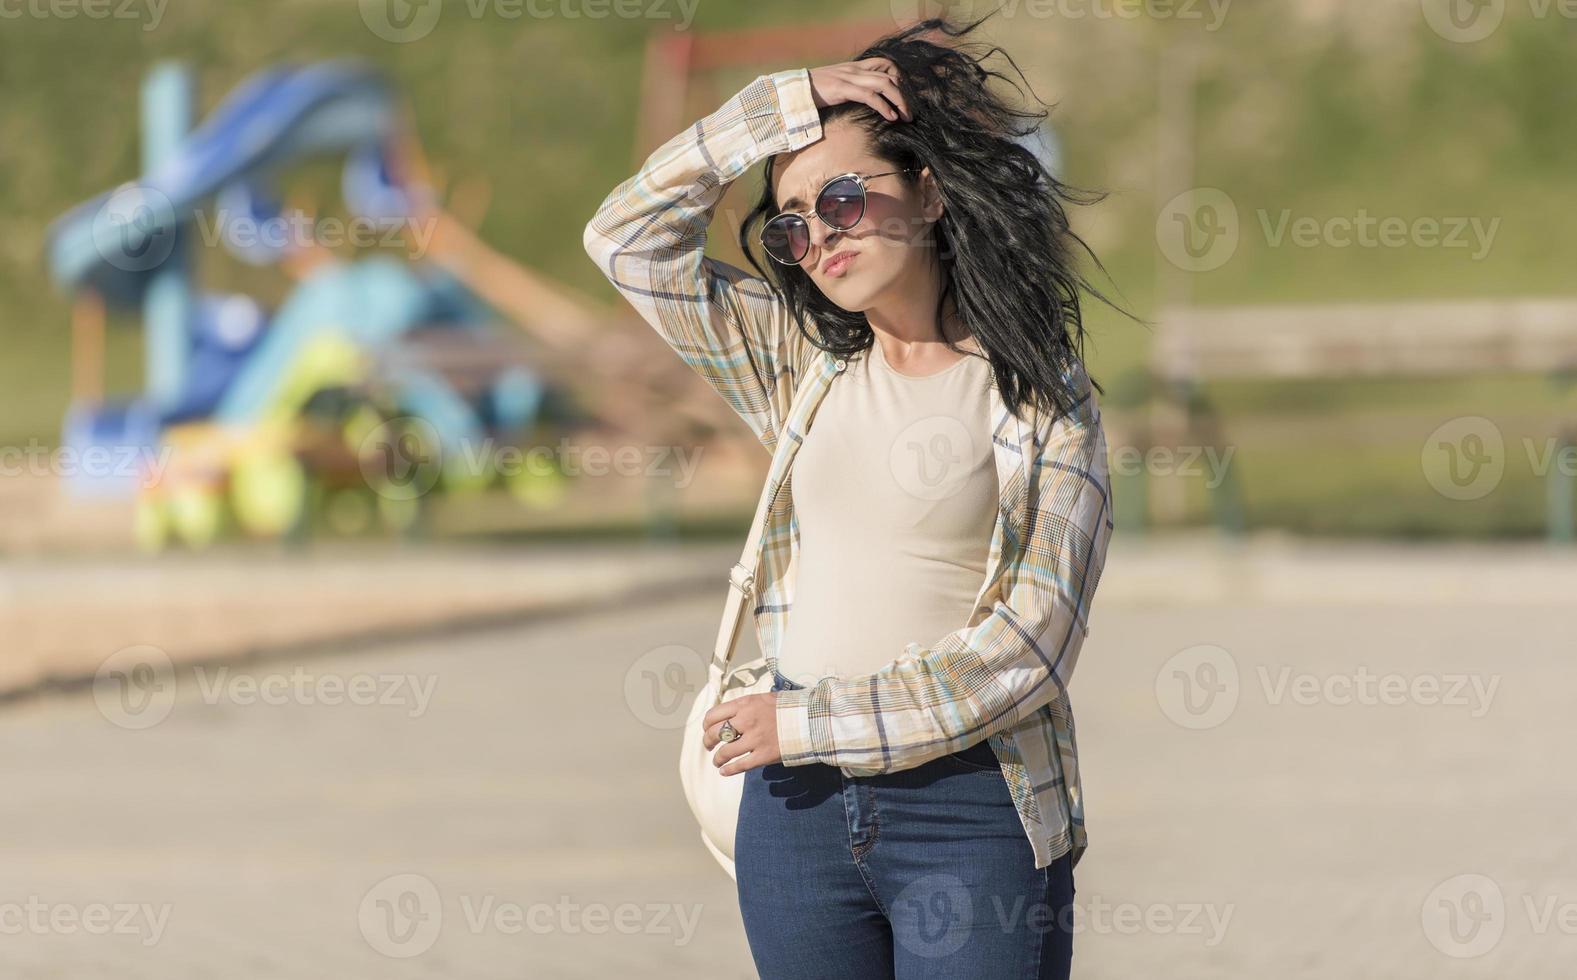 jovem mulher relaxando e aproveitando o dia ensolarado no parque. foto